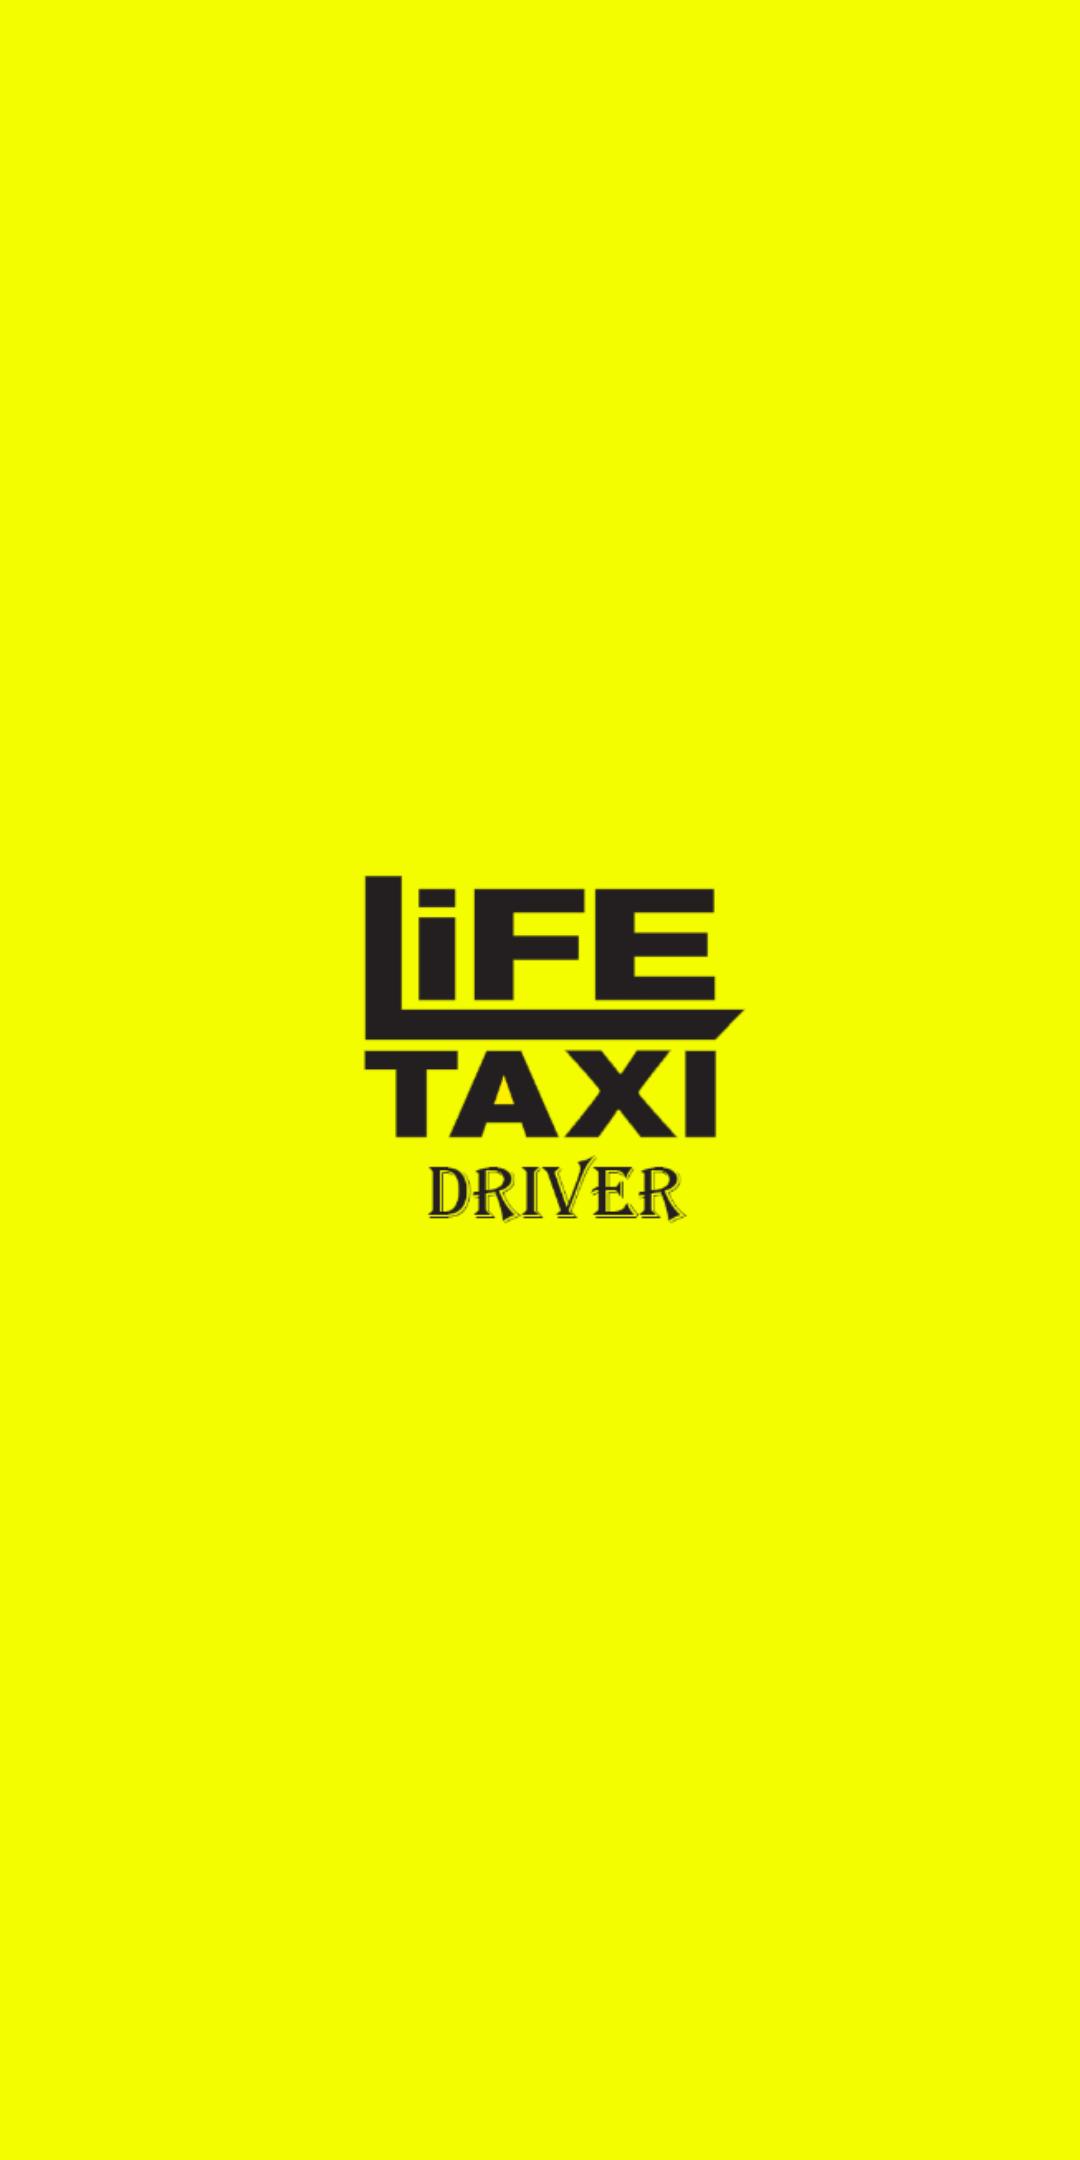 Taxi life моды. Такси лайф. Жизнь-такси. Taxi Life карта. Такси лайф отзывы.